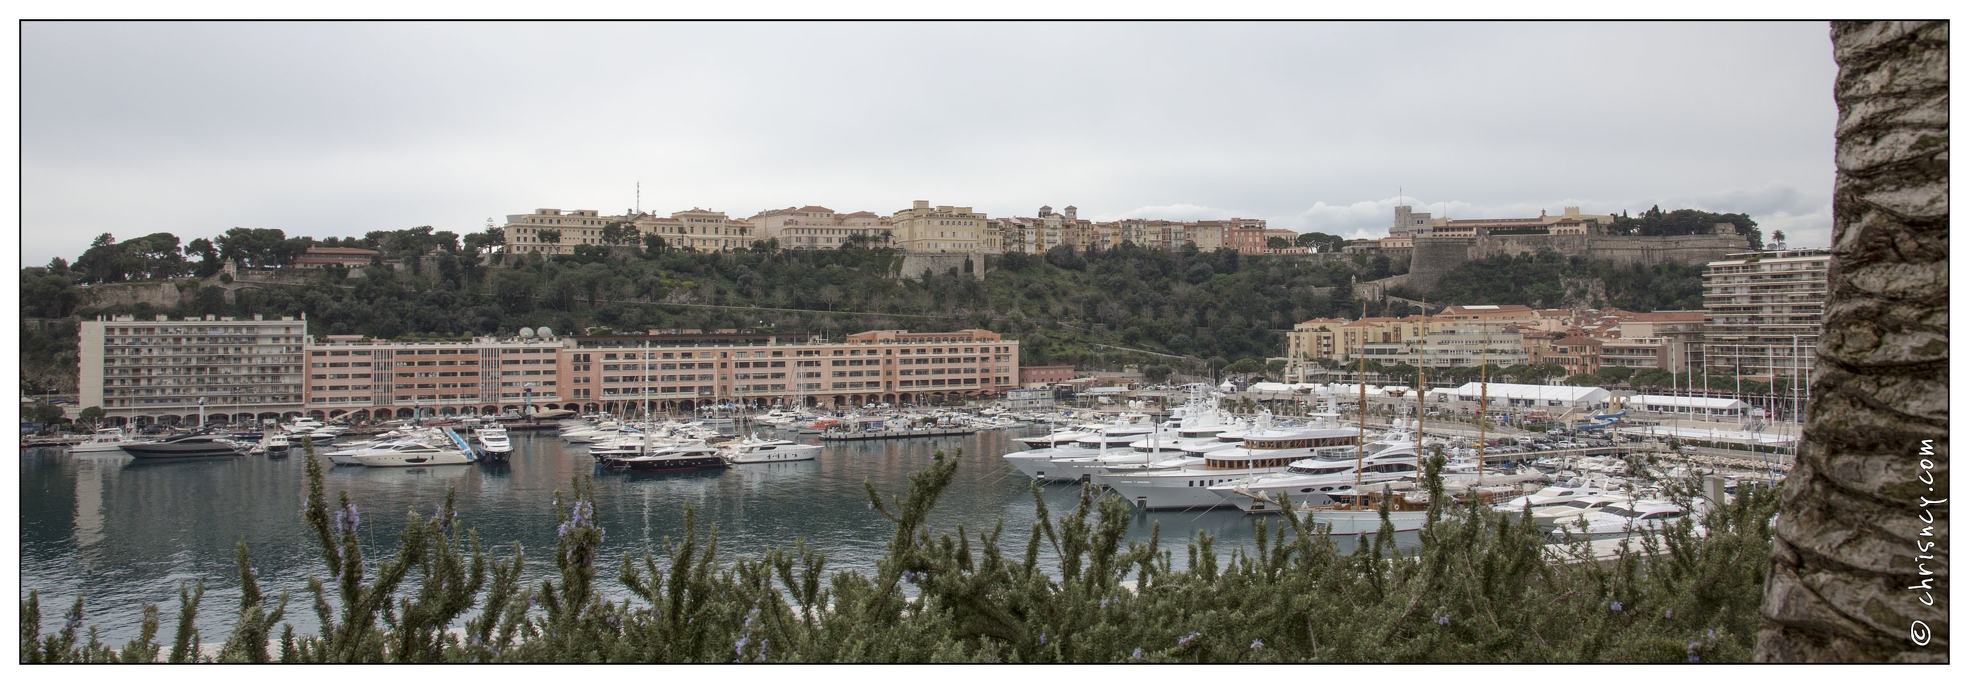 20140228-36_7873-Monaco.jpg